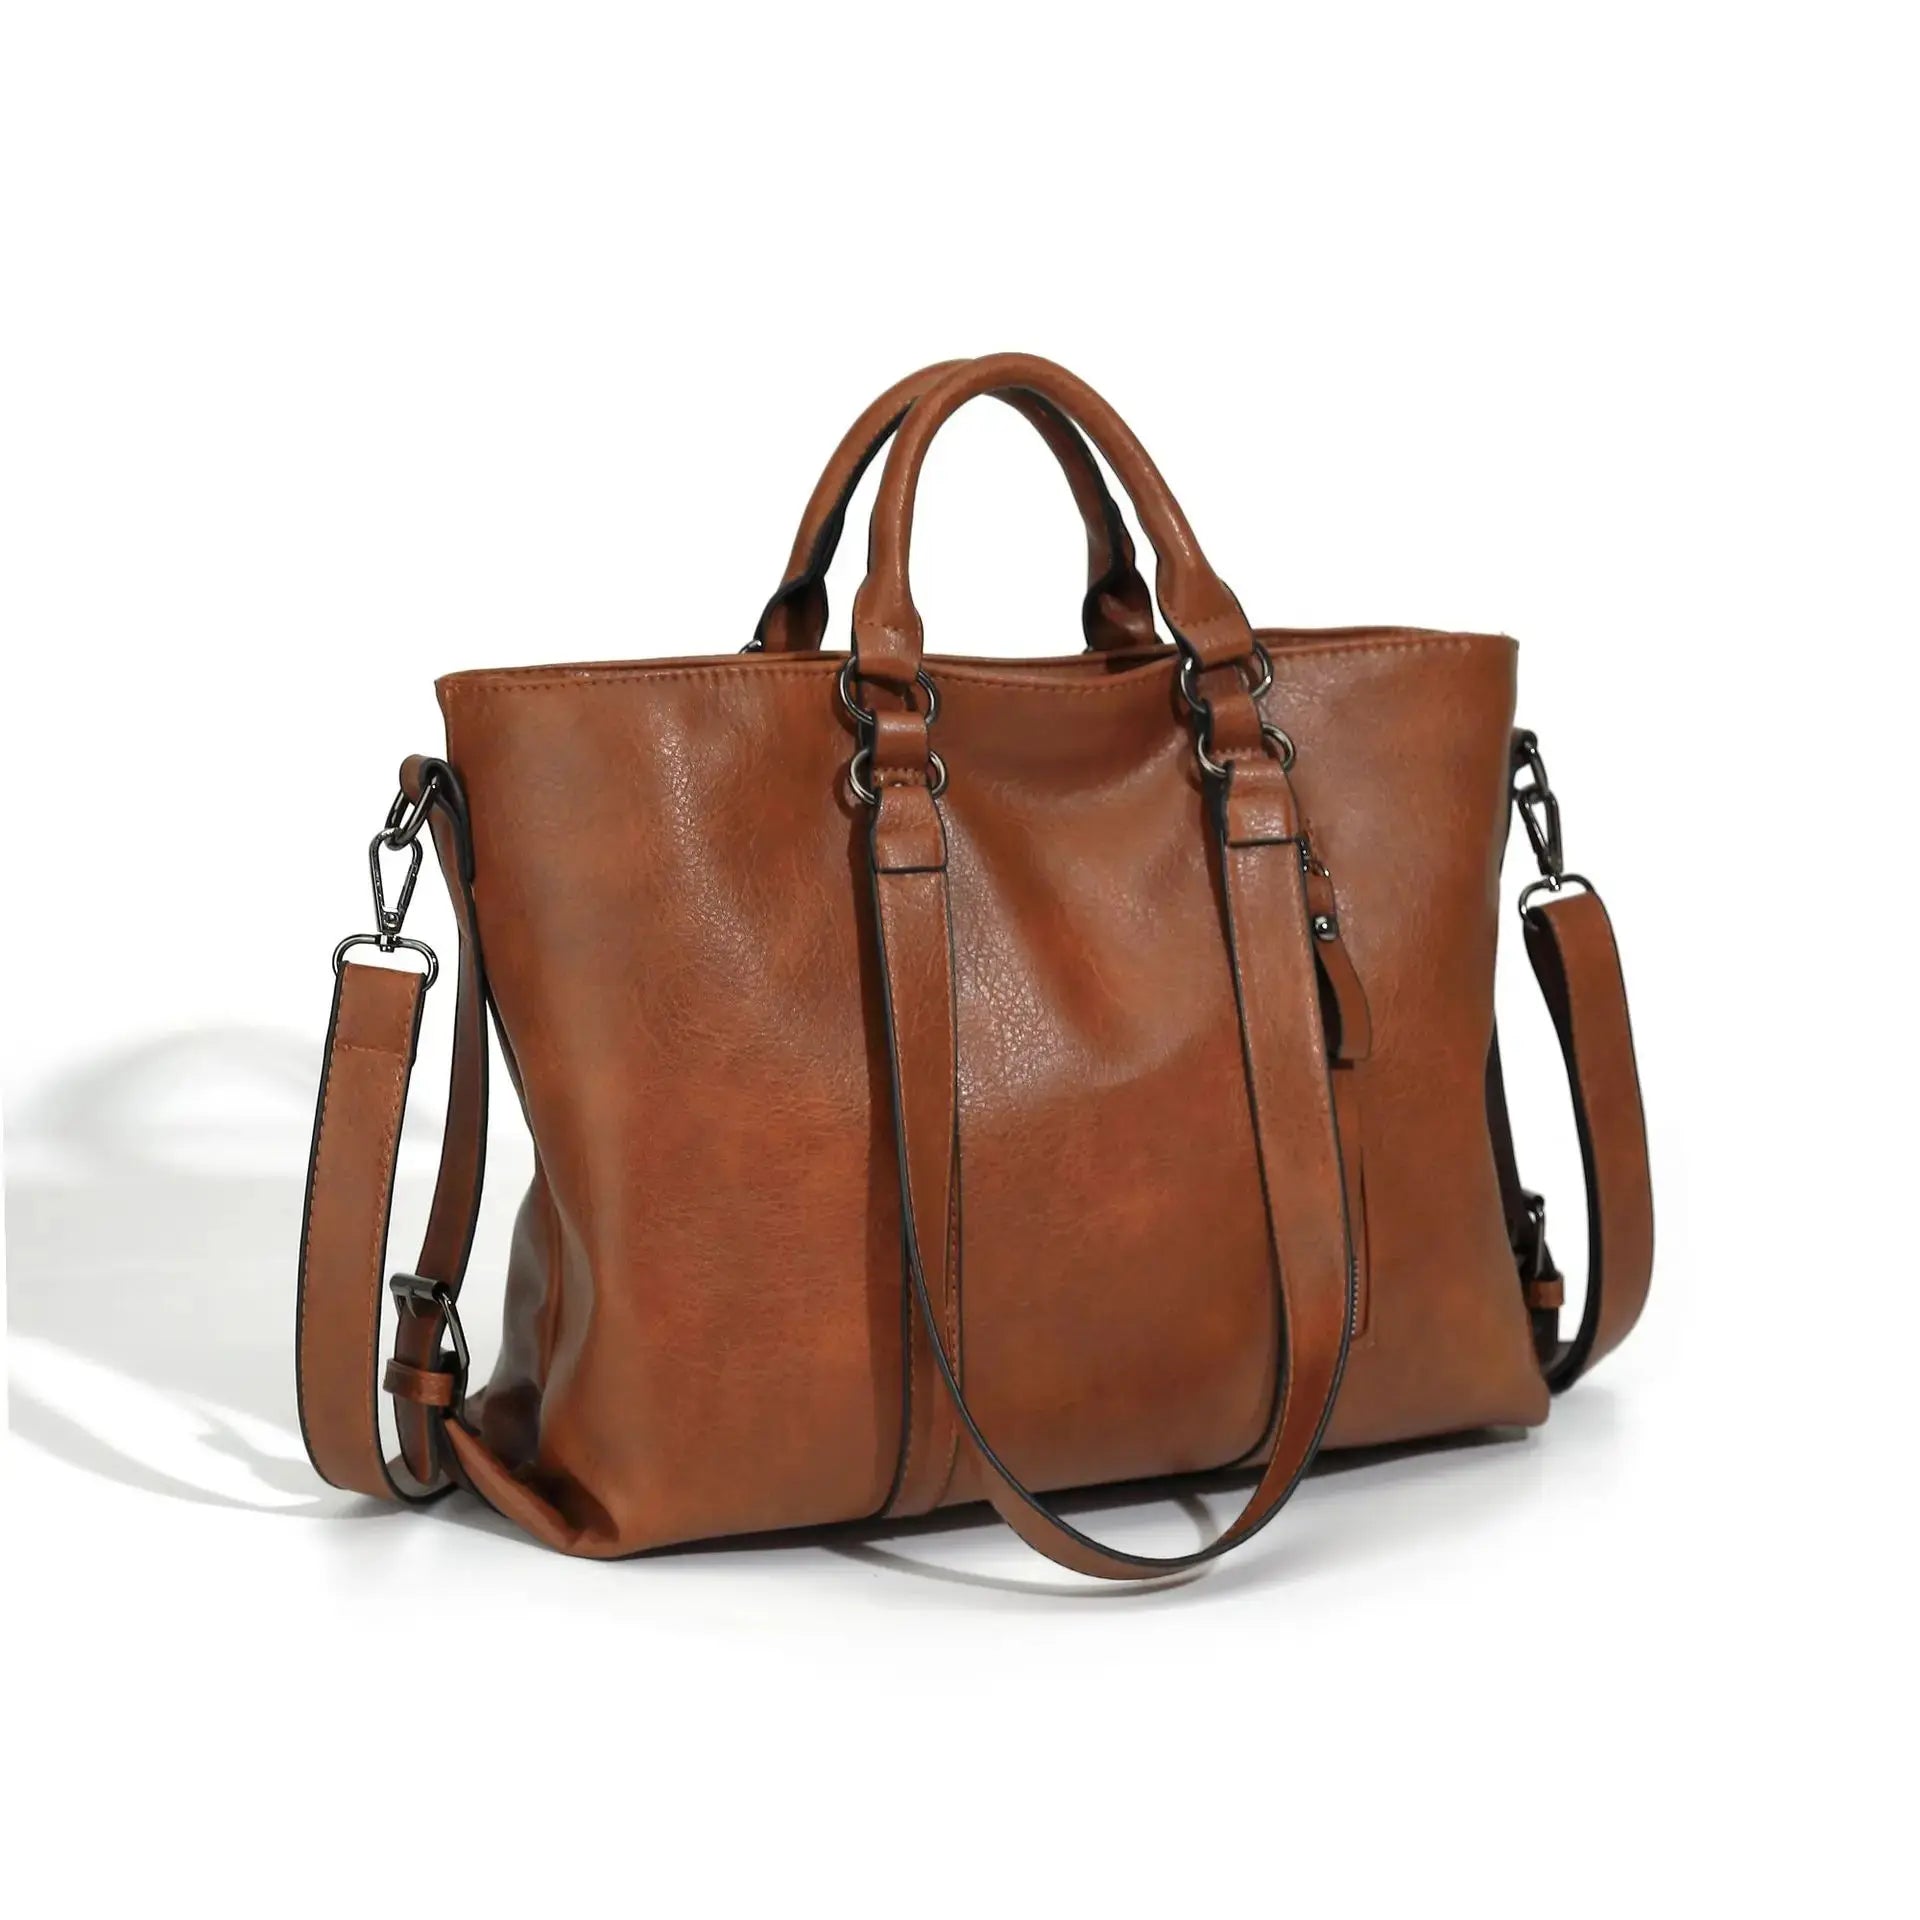 Vintage Leather Tote Bag For Women Large Capacity Handle Bag Designer Handbag VIntage Crossbody Bag Brands Handle Bag